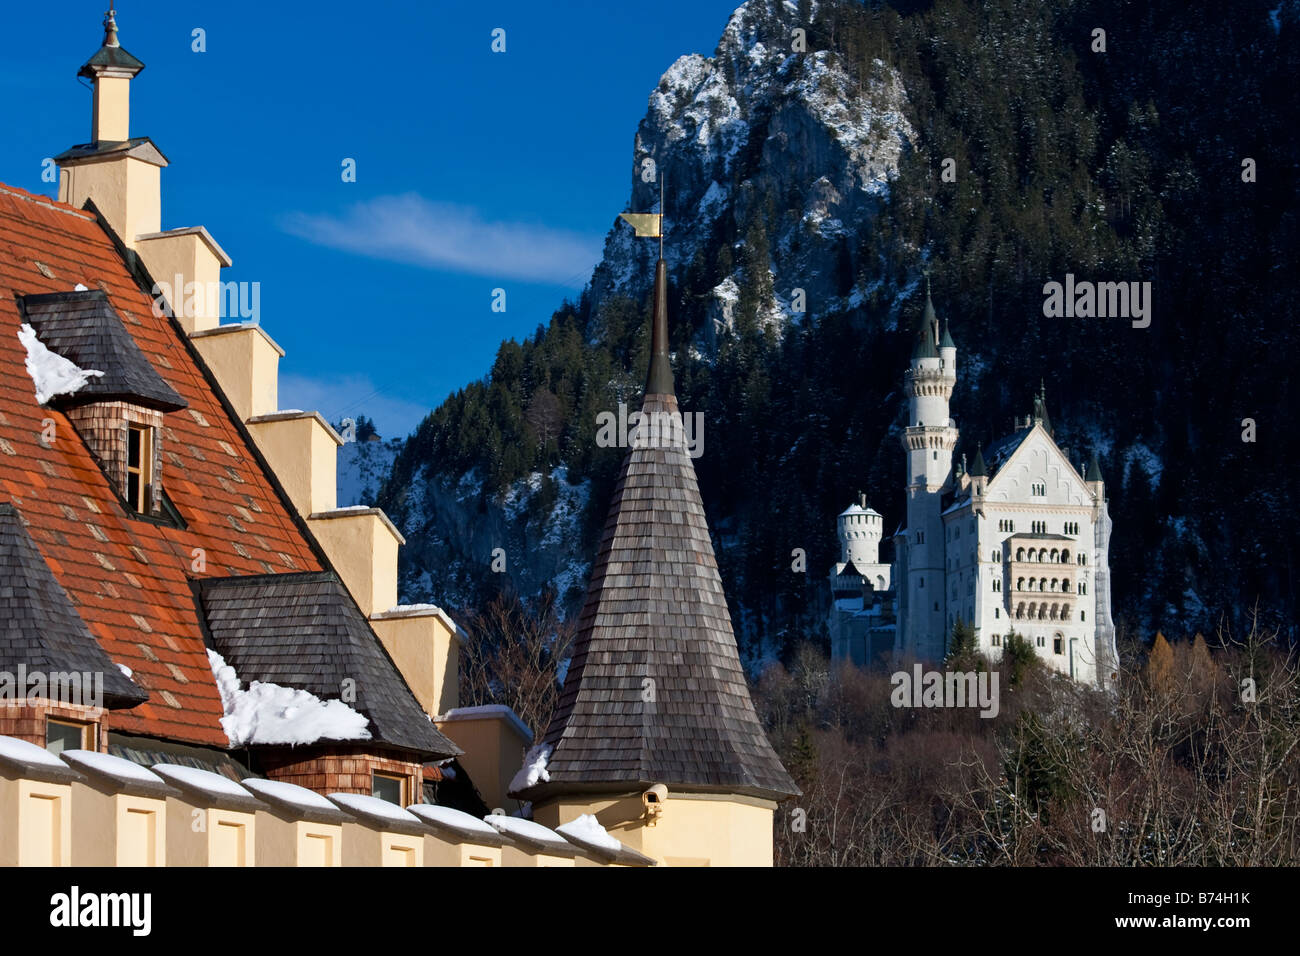 Les châteaux de Neuschwanstein et Hohenschwangau Fussen Allemagne Bavière, près de Banque D'Images